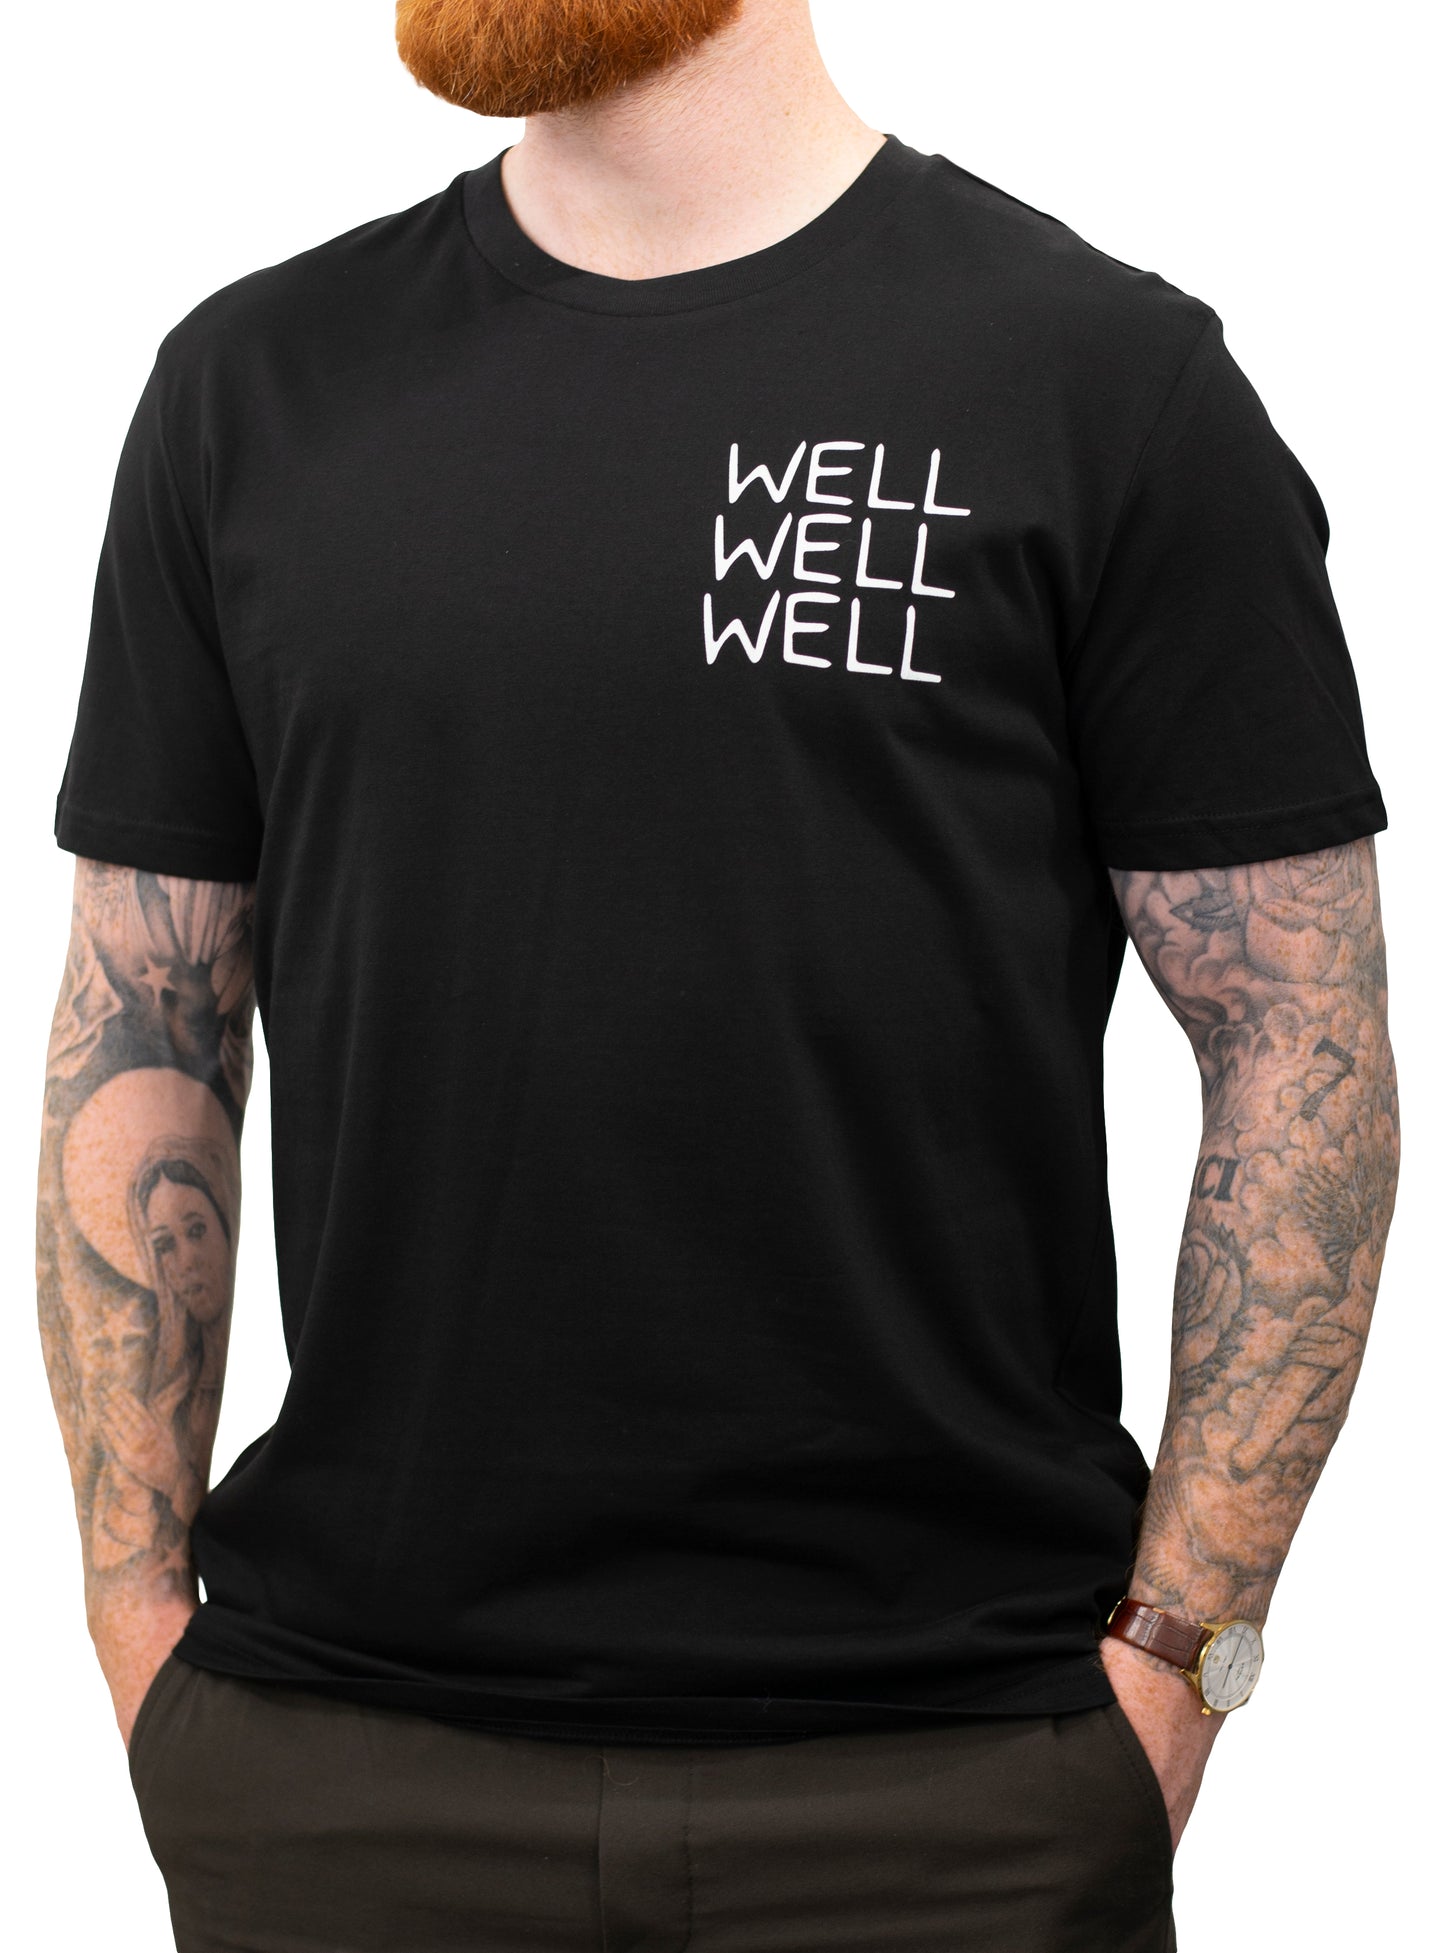 Well Well Well - Milburn - Unisex T-Shirt - Luke Horton